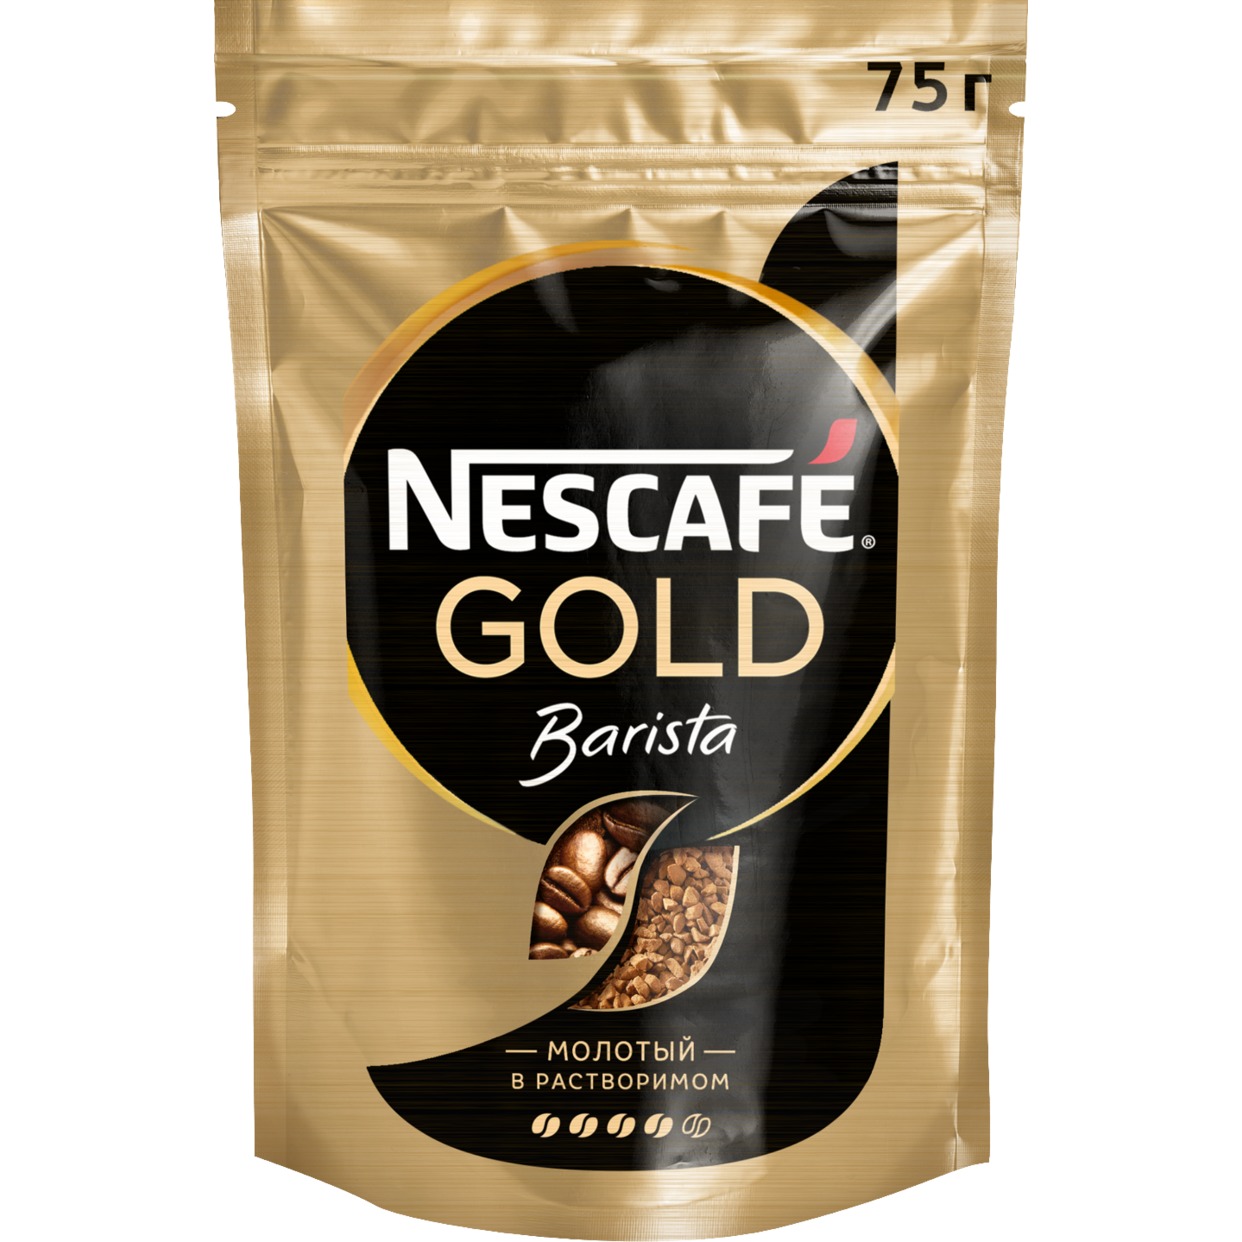 Кофе Nescafe Gold, Barista, молотый в растворимом, 75 г по акции в Пятерочке